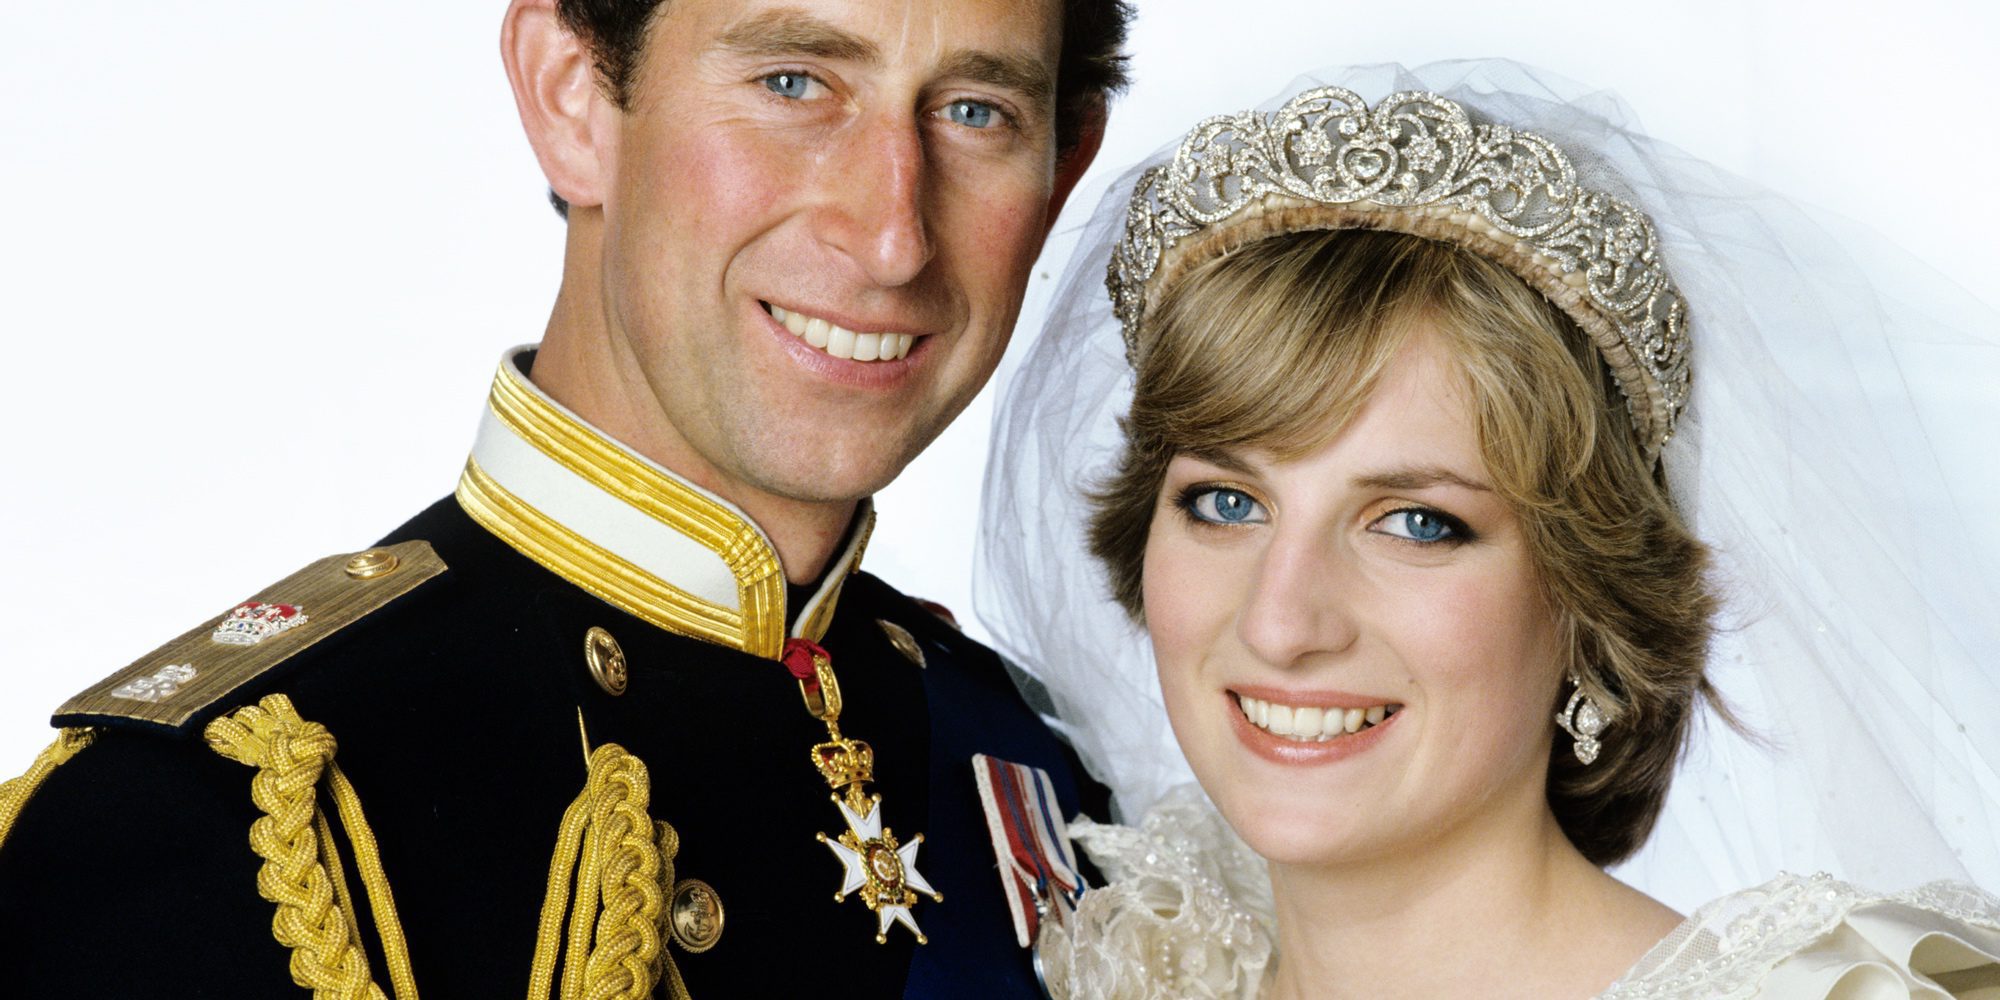 5 detalles de la boda del Príncipe Carlos y Lady Di: el enlace que hizo desgraciada a Diana de Gales